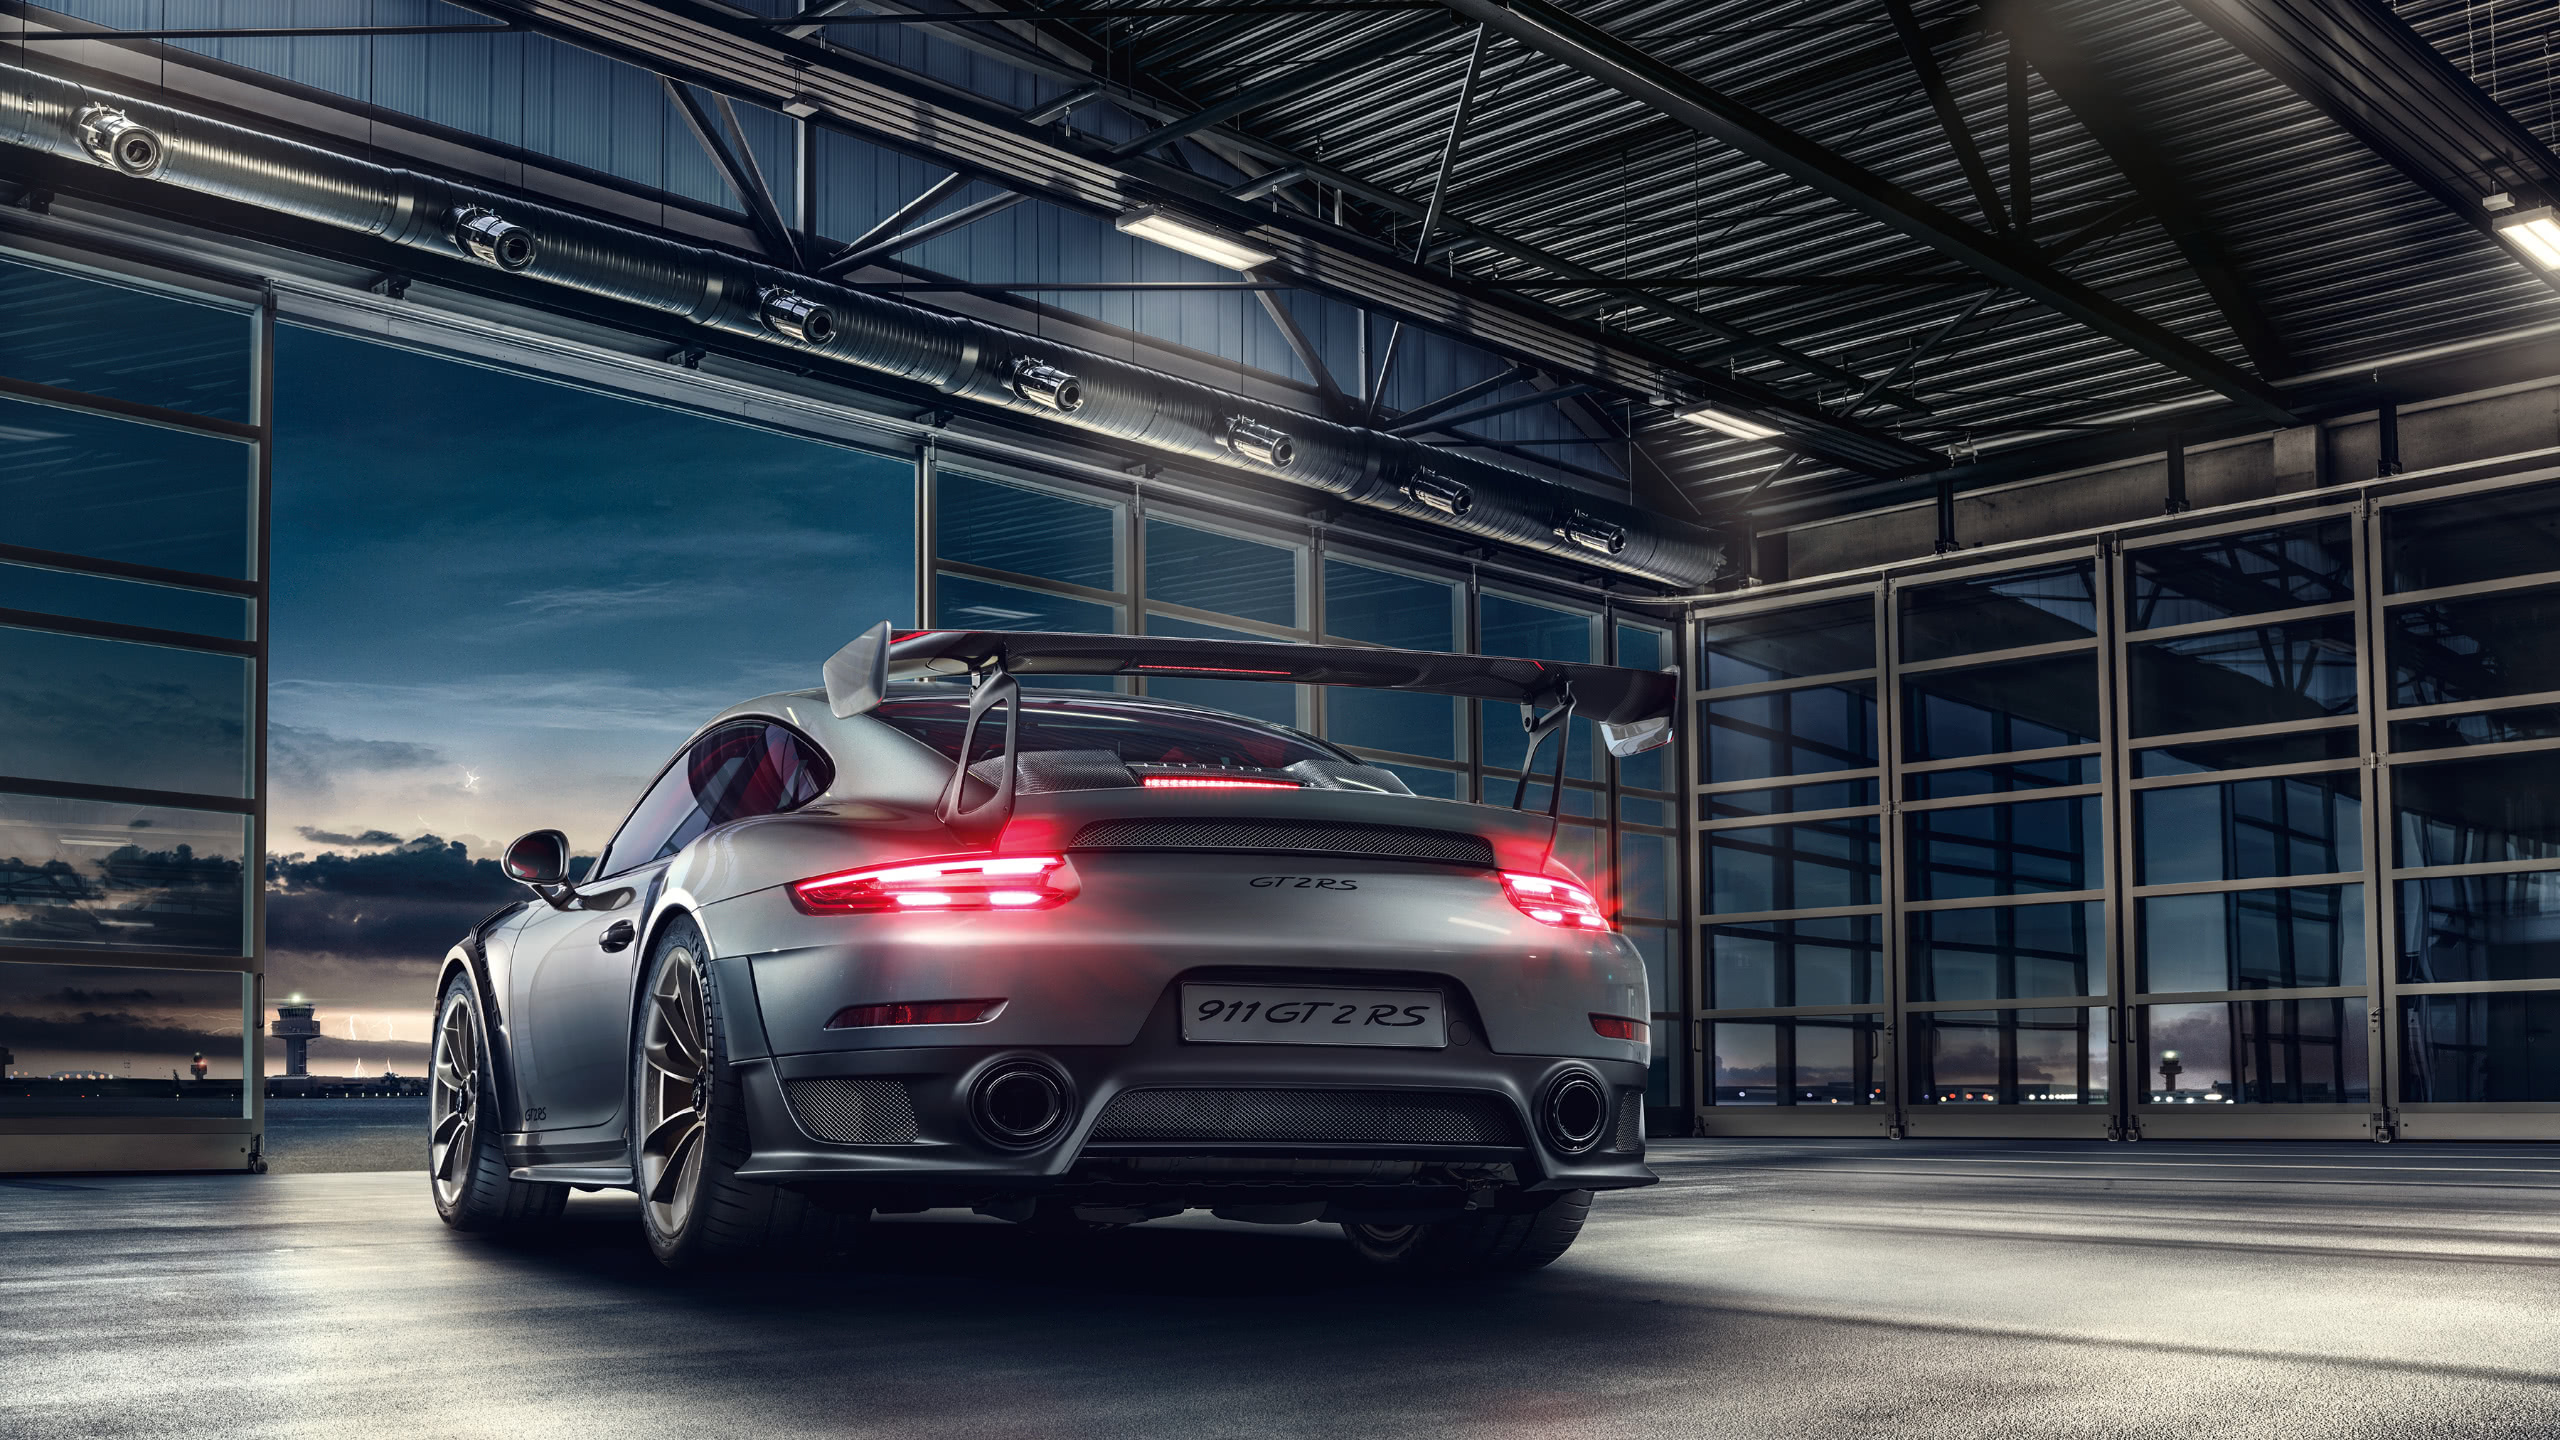 Porsche 911, GT2 RS, Rear view, High-resolution wallpaper, 2560x1440 HD Desktop